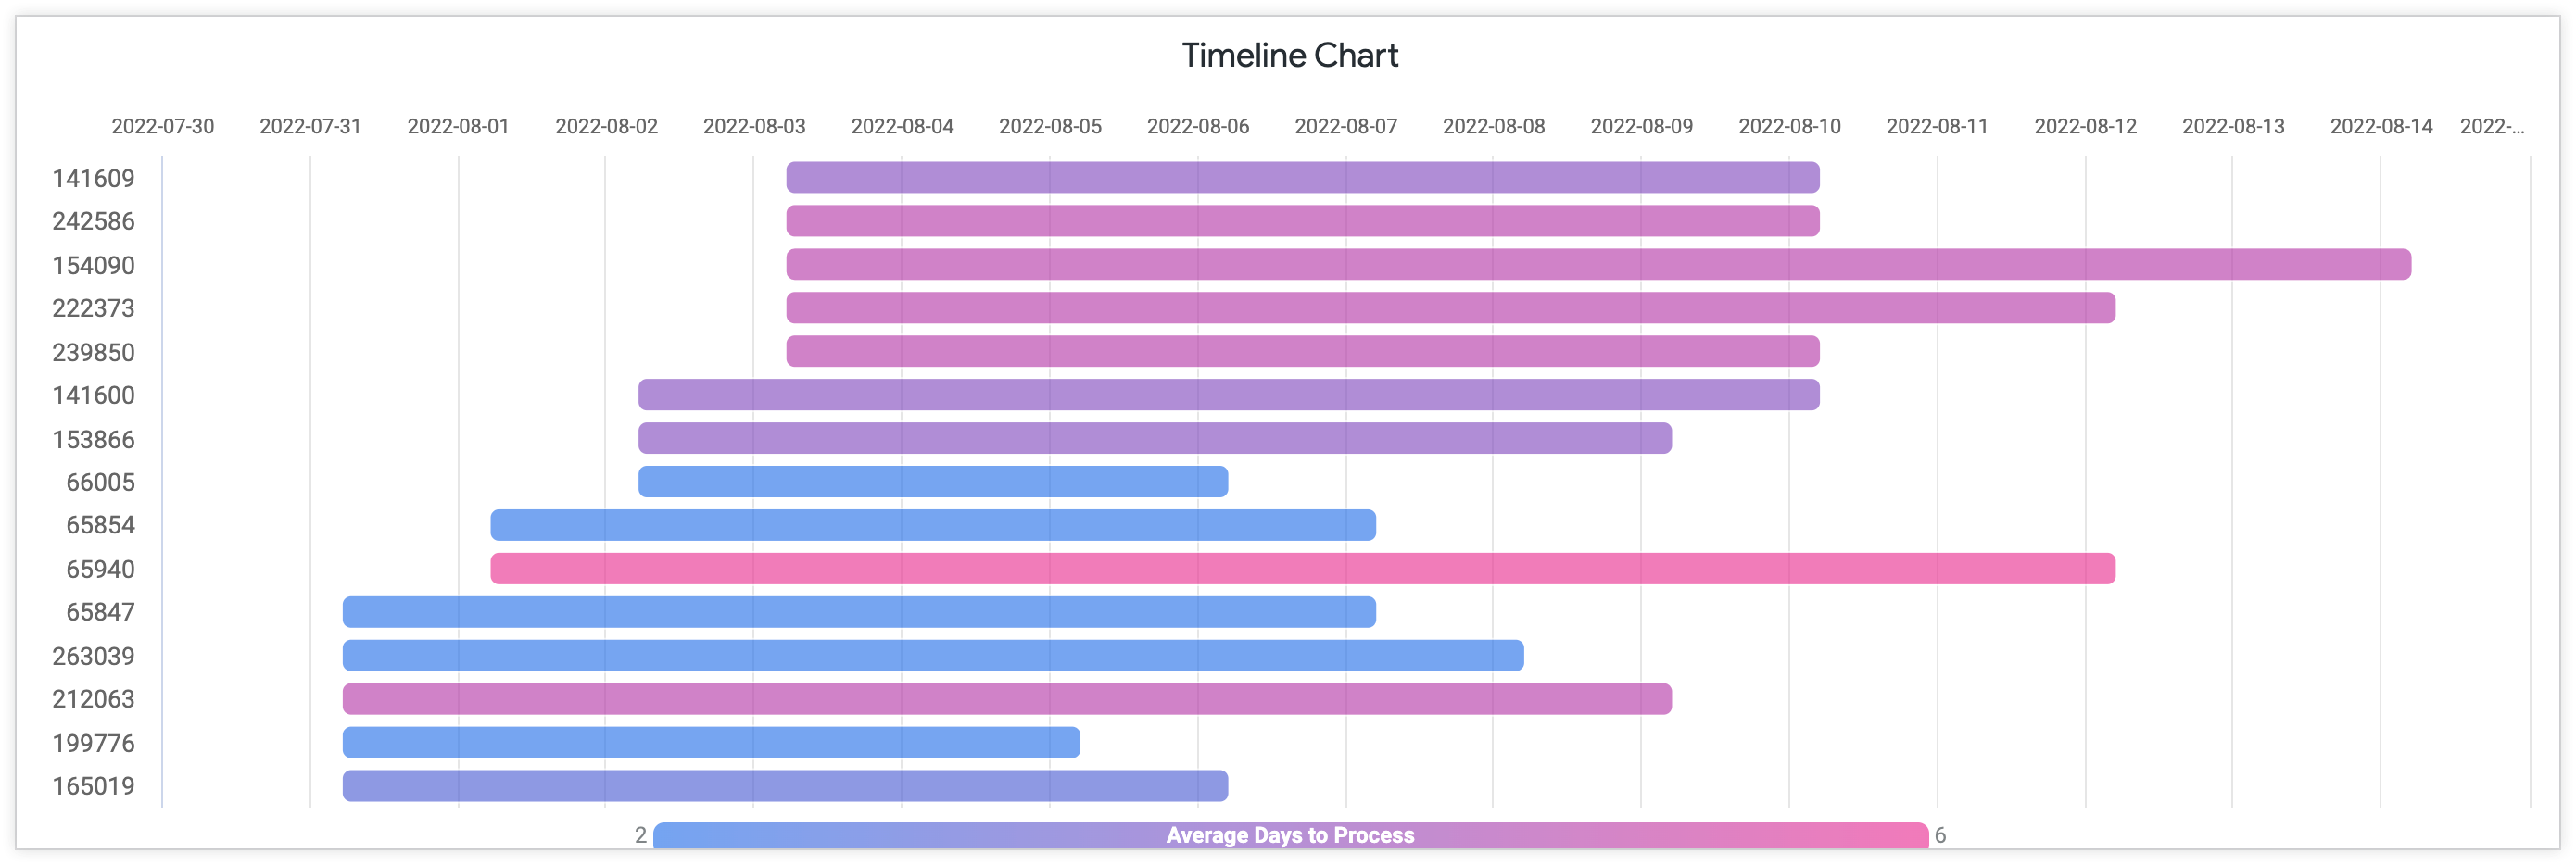 Gráfico de cronograma que muestra el promedio de días para procesar con el ID de pedido en el eje y y los días de julio a agosto de 2022 en el eje X.